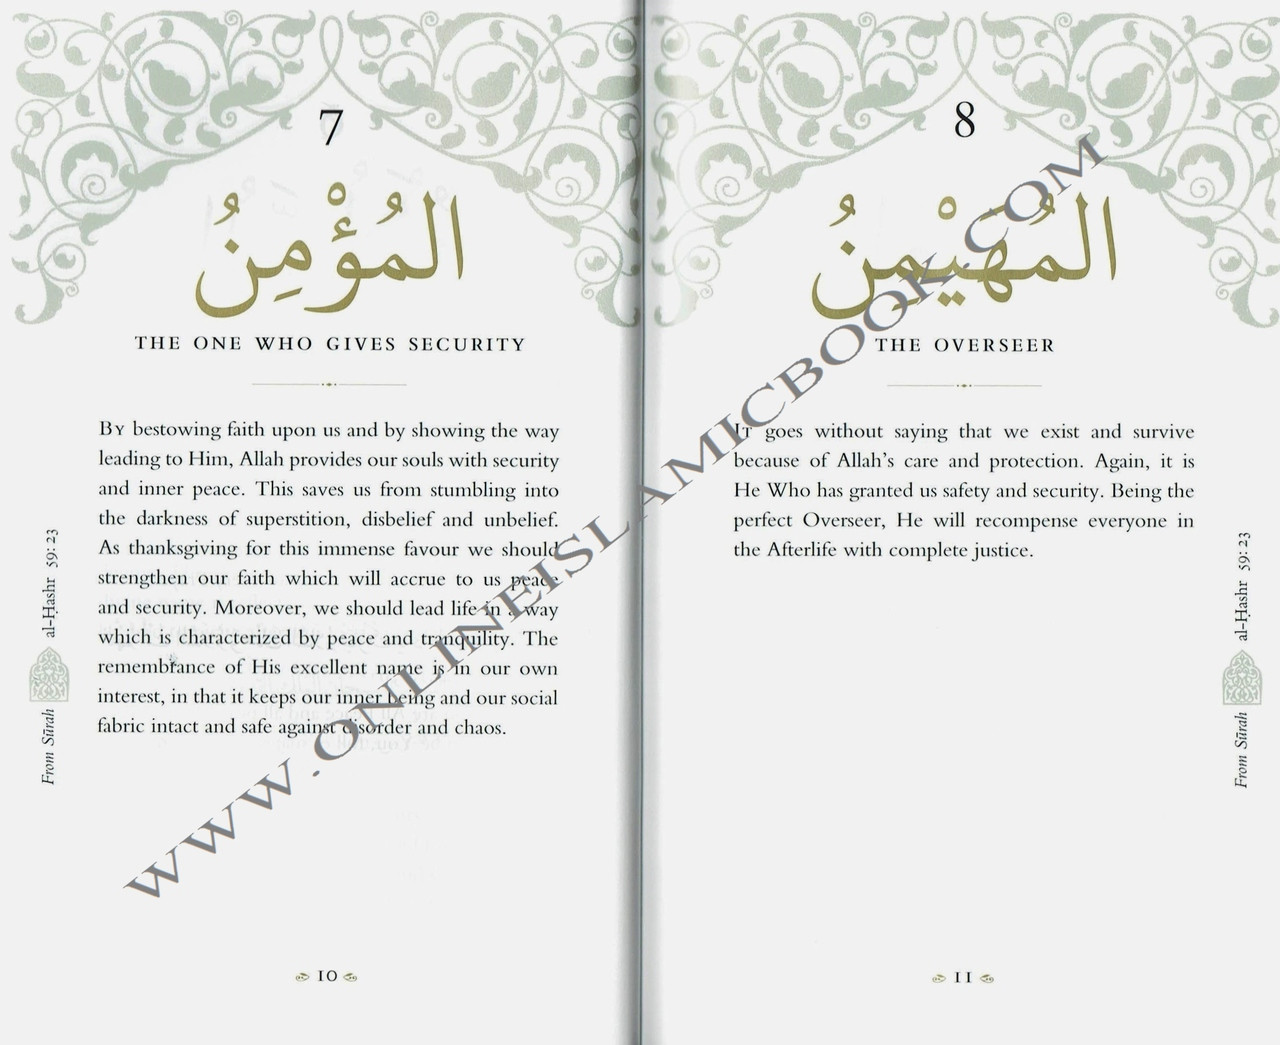 99 Names (Characteristics) of ALLAH | Islam | Pinterest